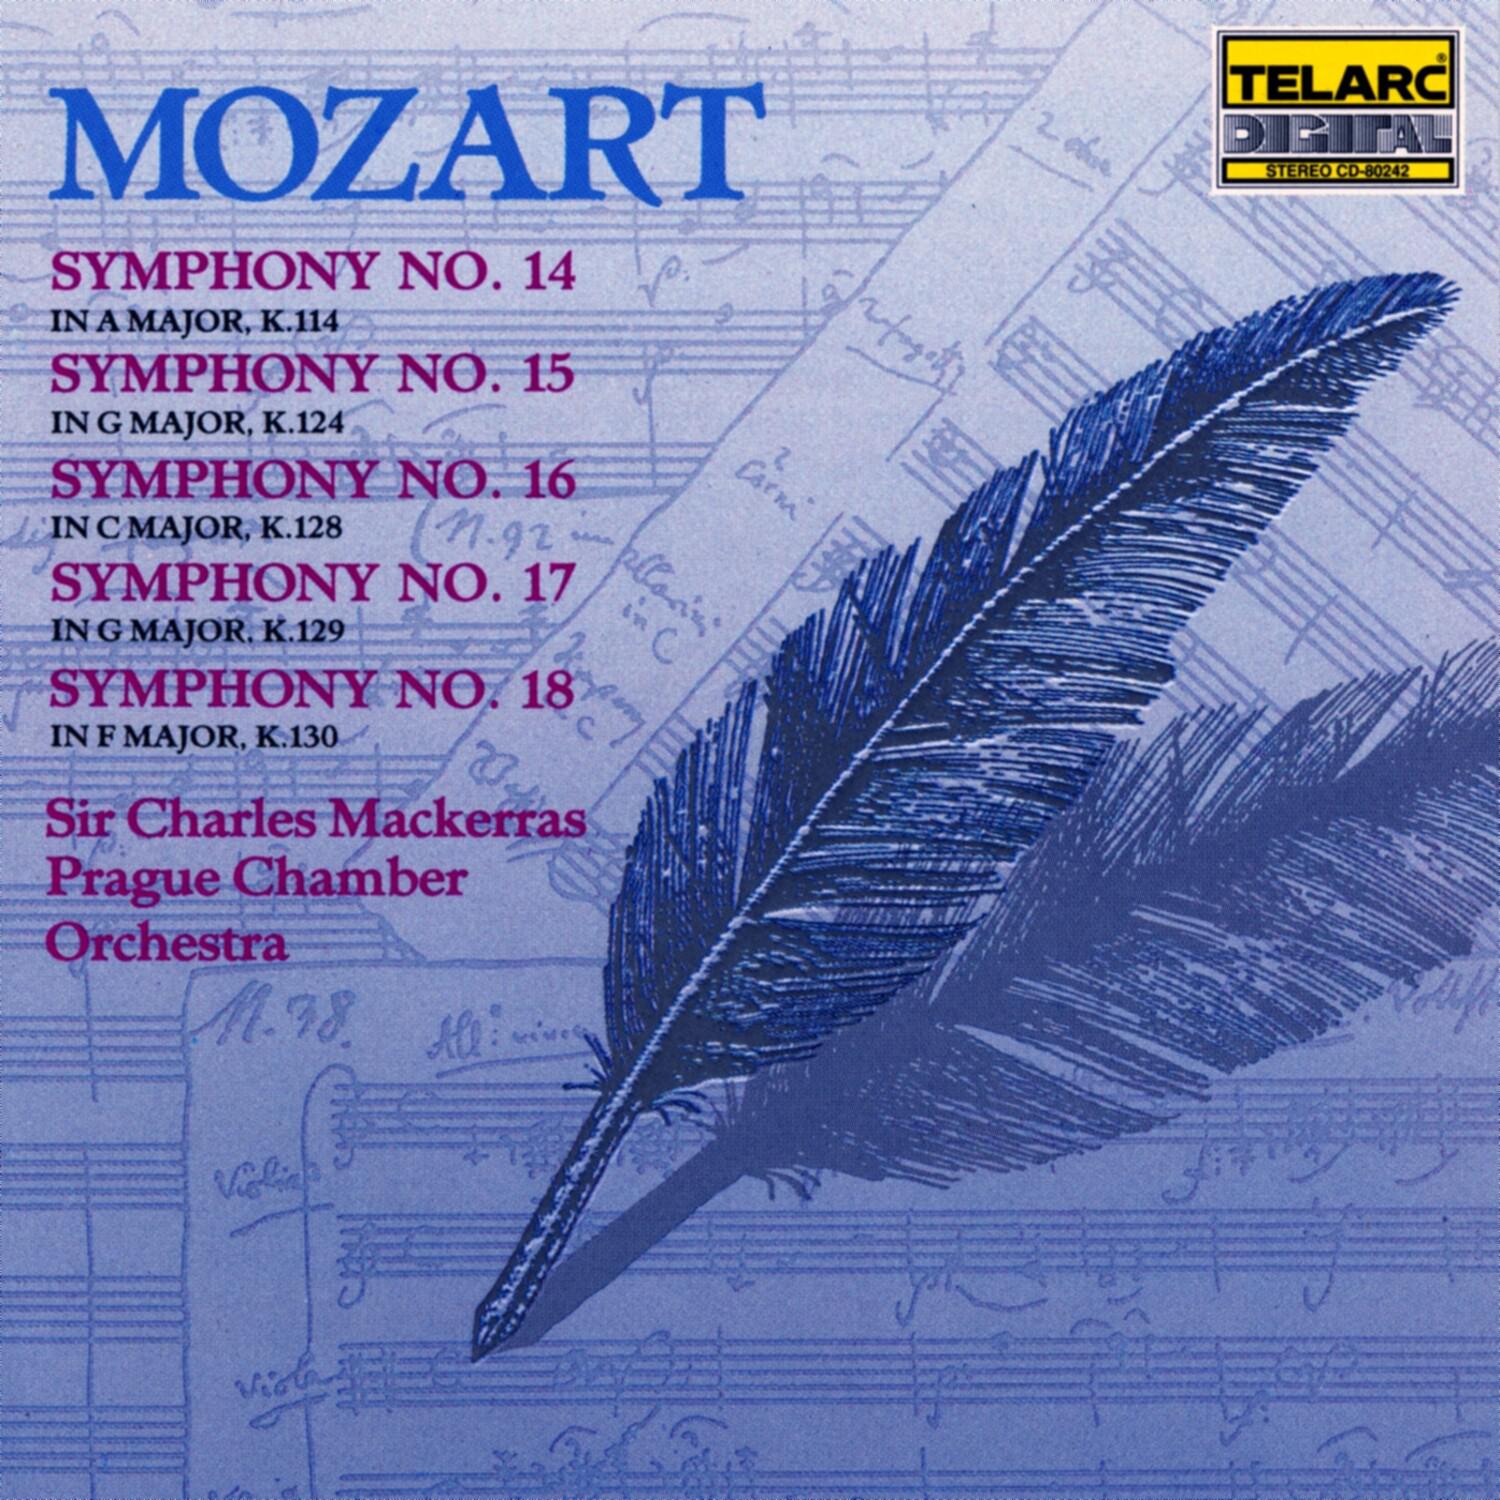 Symphony No. 15 in G major, K.124: III. Menuetto; Trio